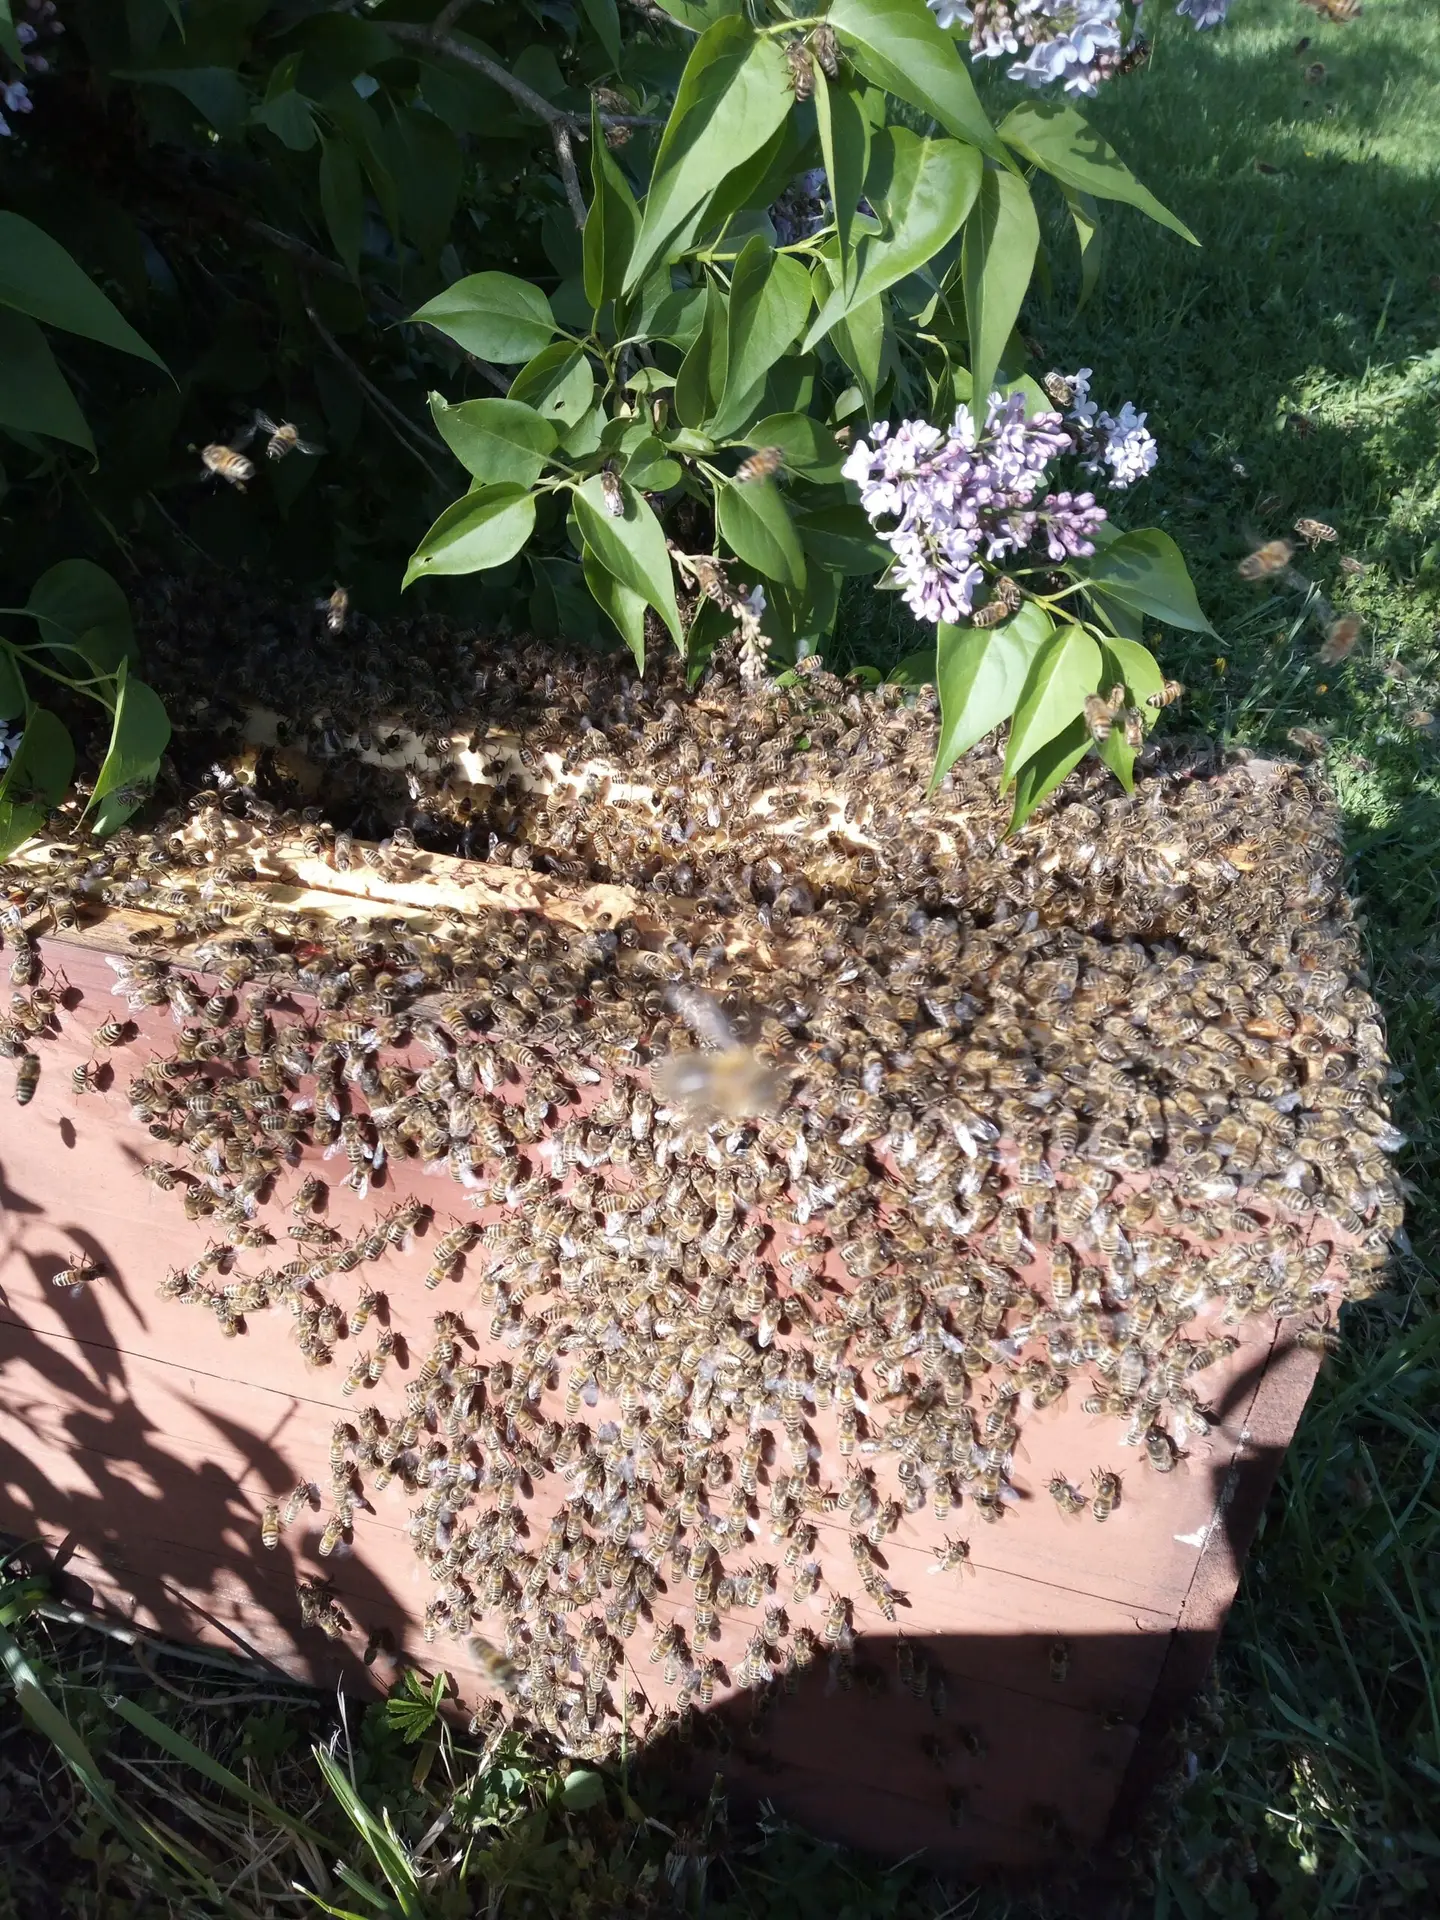 Un apiculteur en combinaison protectrice cueille soigneusement un essaim d'abeilles accroché à une branche d'arbre, illustrant l'interaction délicate entre l'homme et les abeilles dans le processus de récupération d'essaim pour l'apiculture